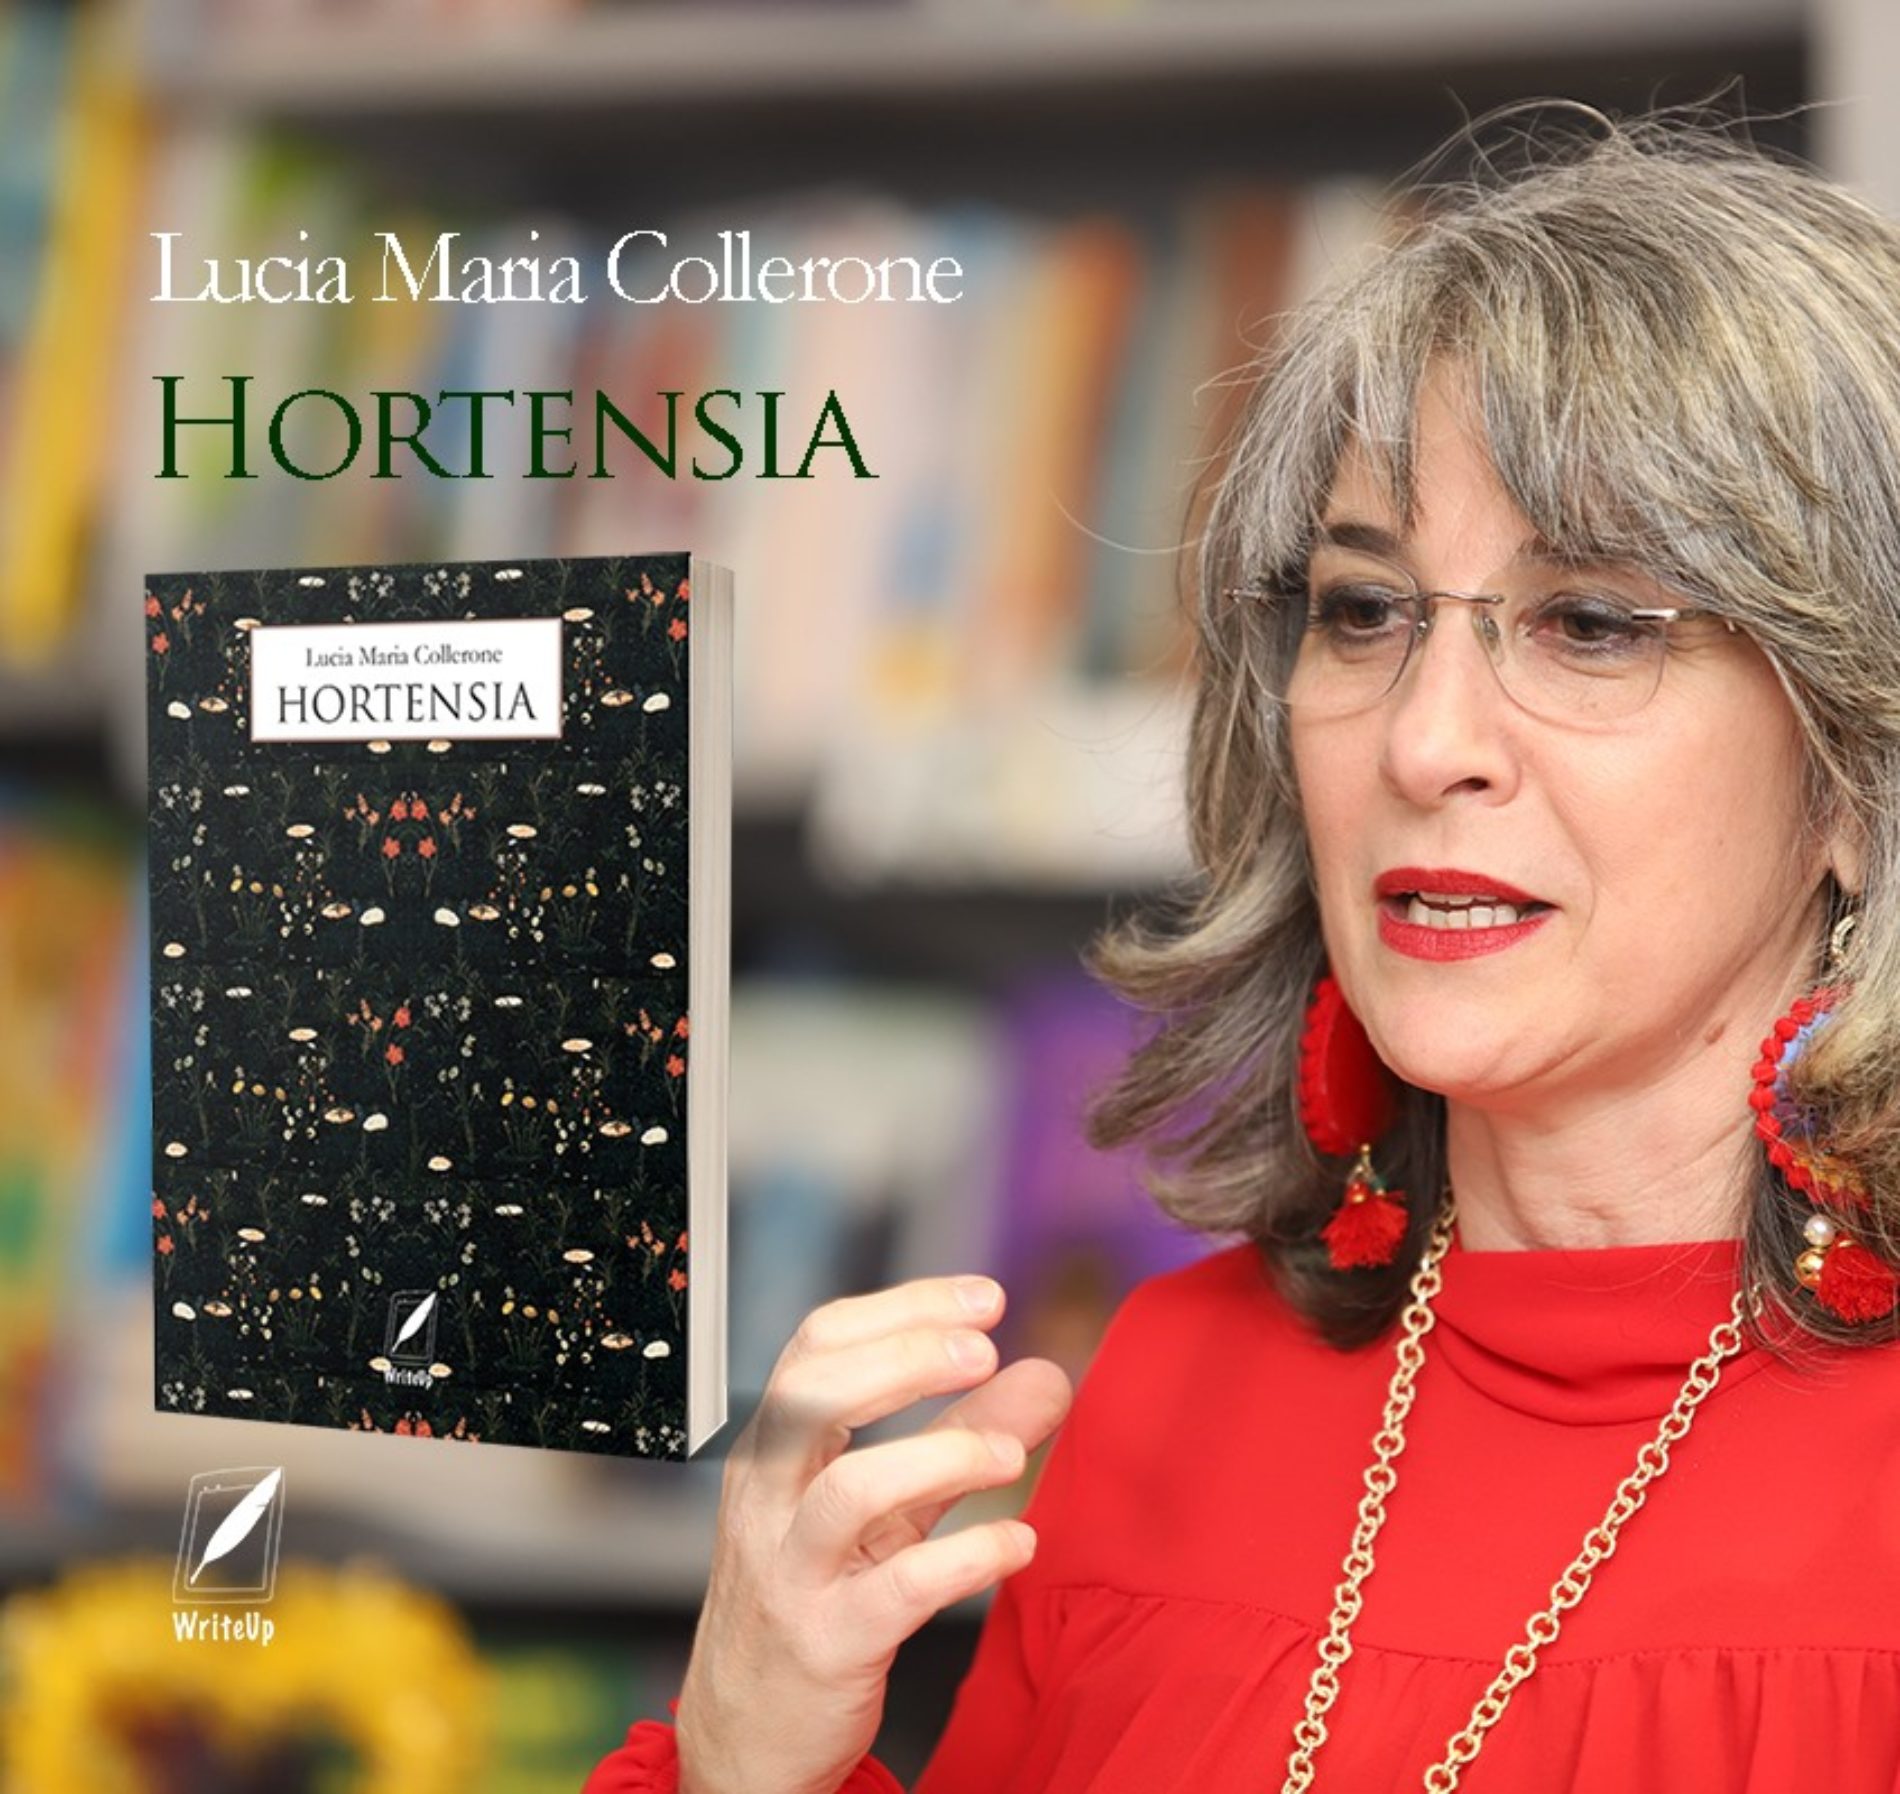 Libri. “Hortensia” il nuovo libro della scrittrice Lucia Maria Collerone